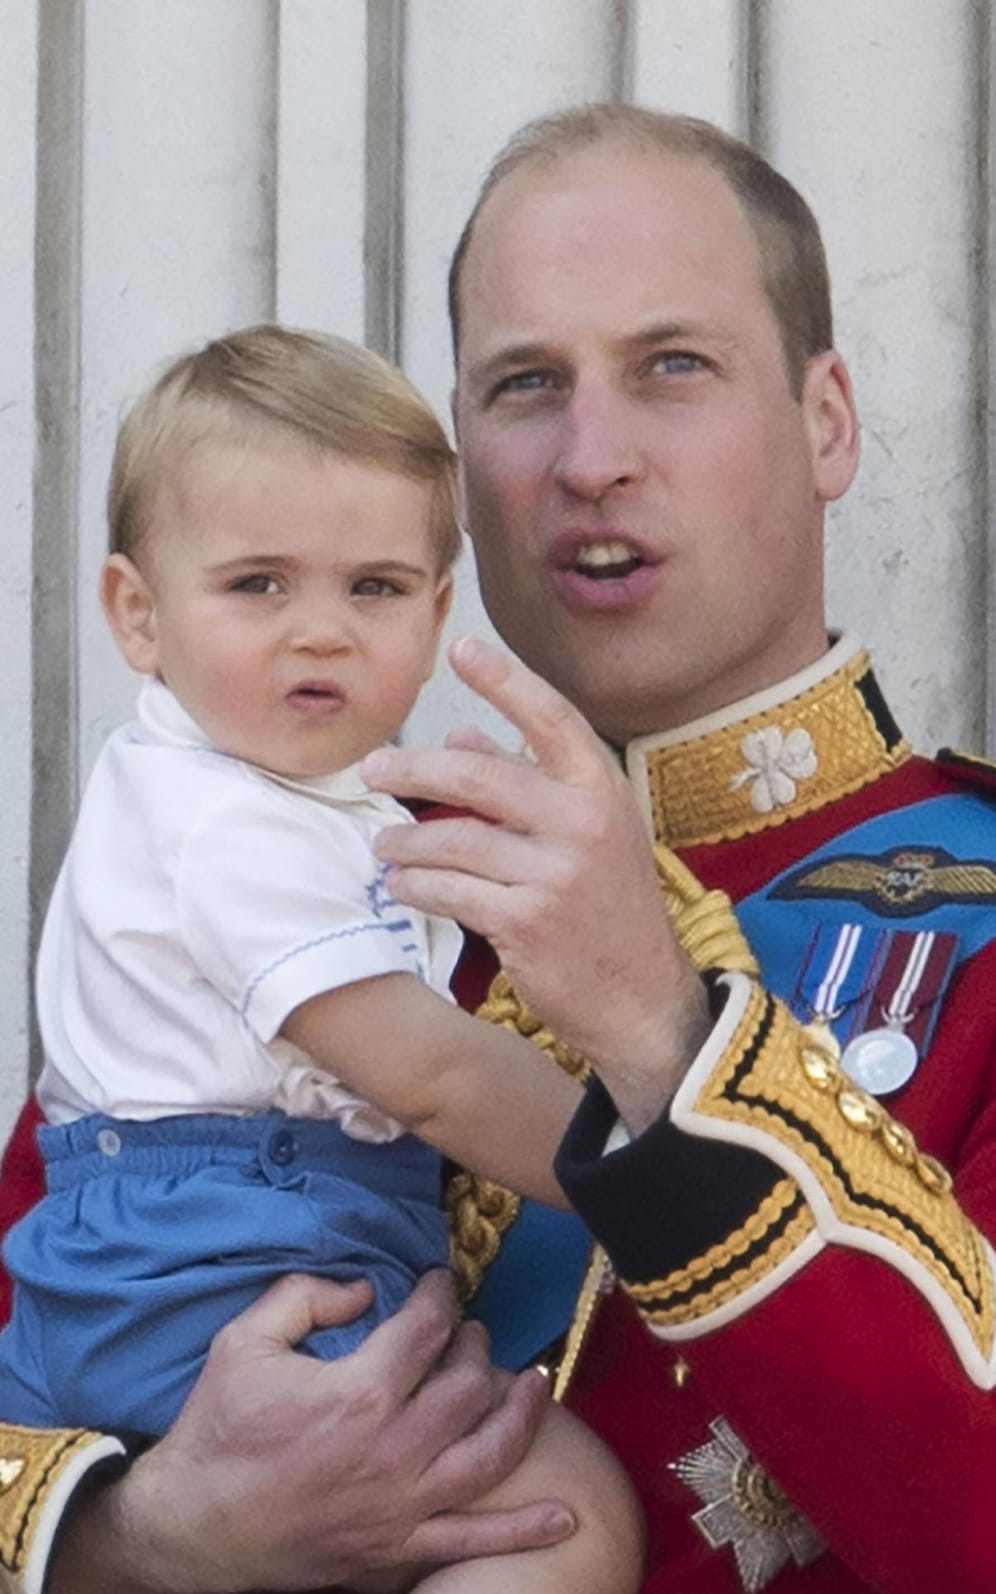 Prinz Louis und Prinz William im Juni 2019